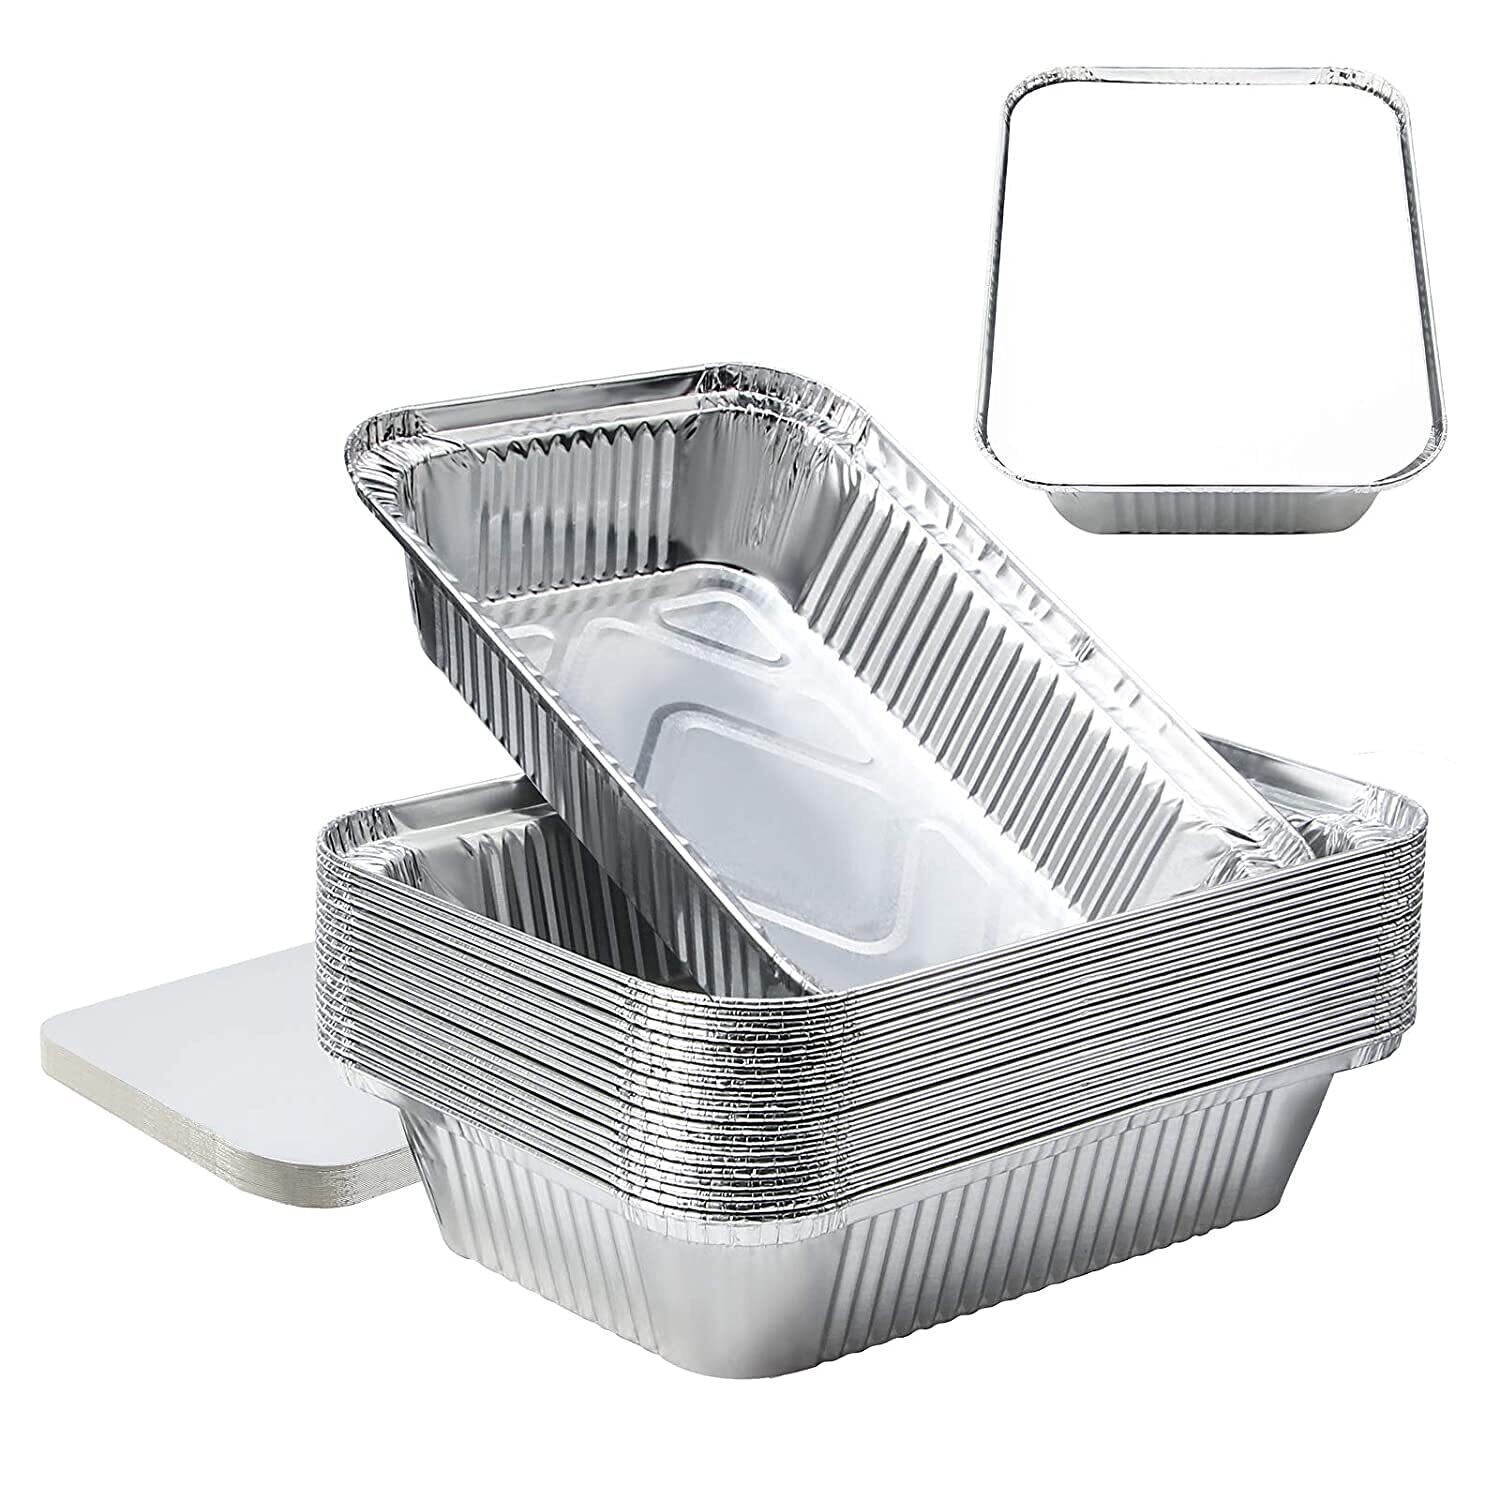 Statwrap aluminium food container with lid 1200ml (12pcs) rectangular